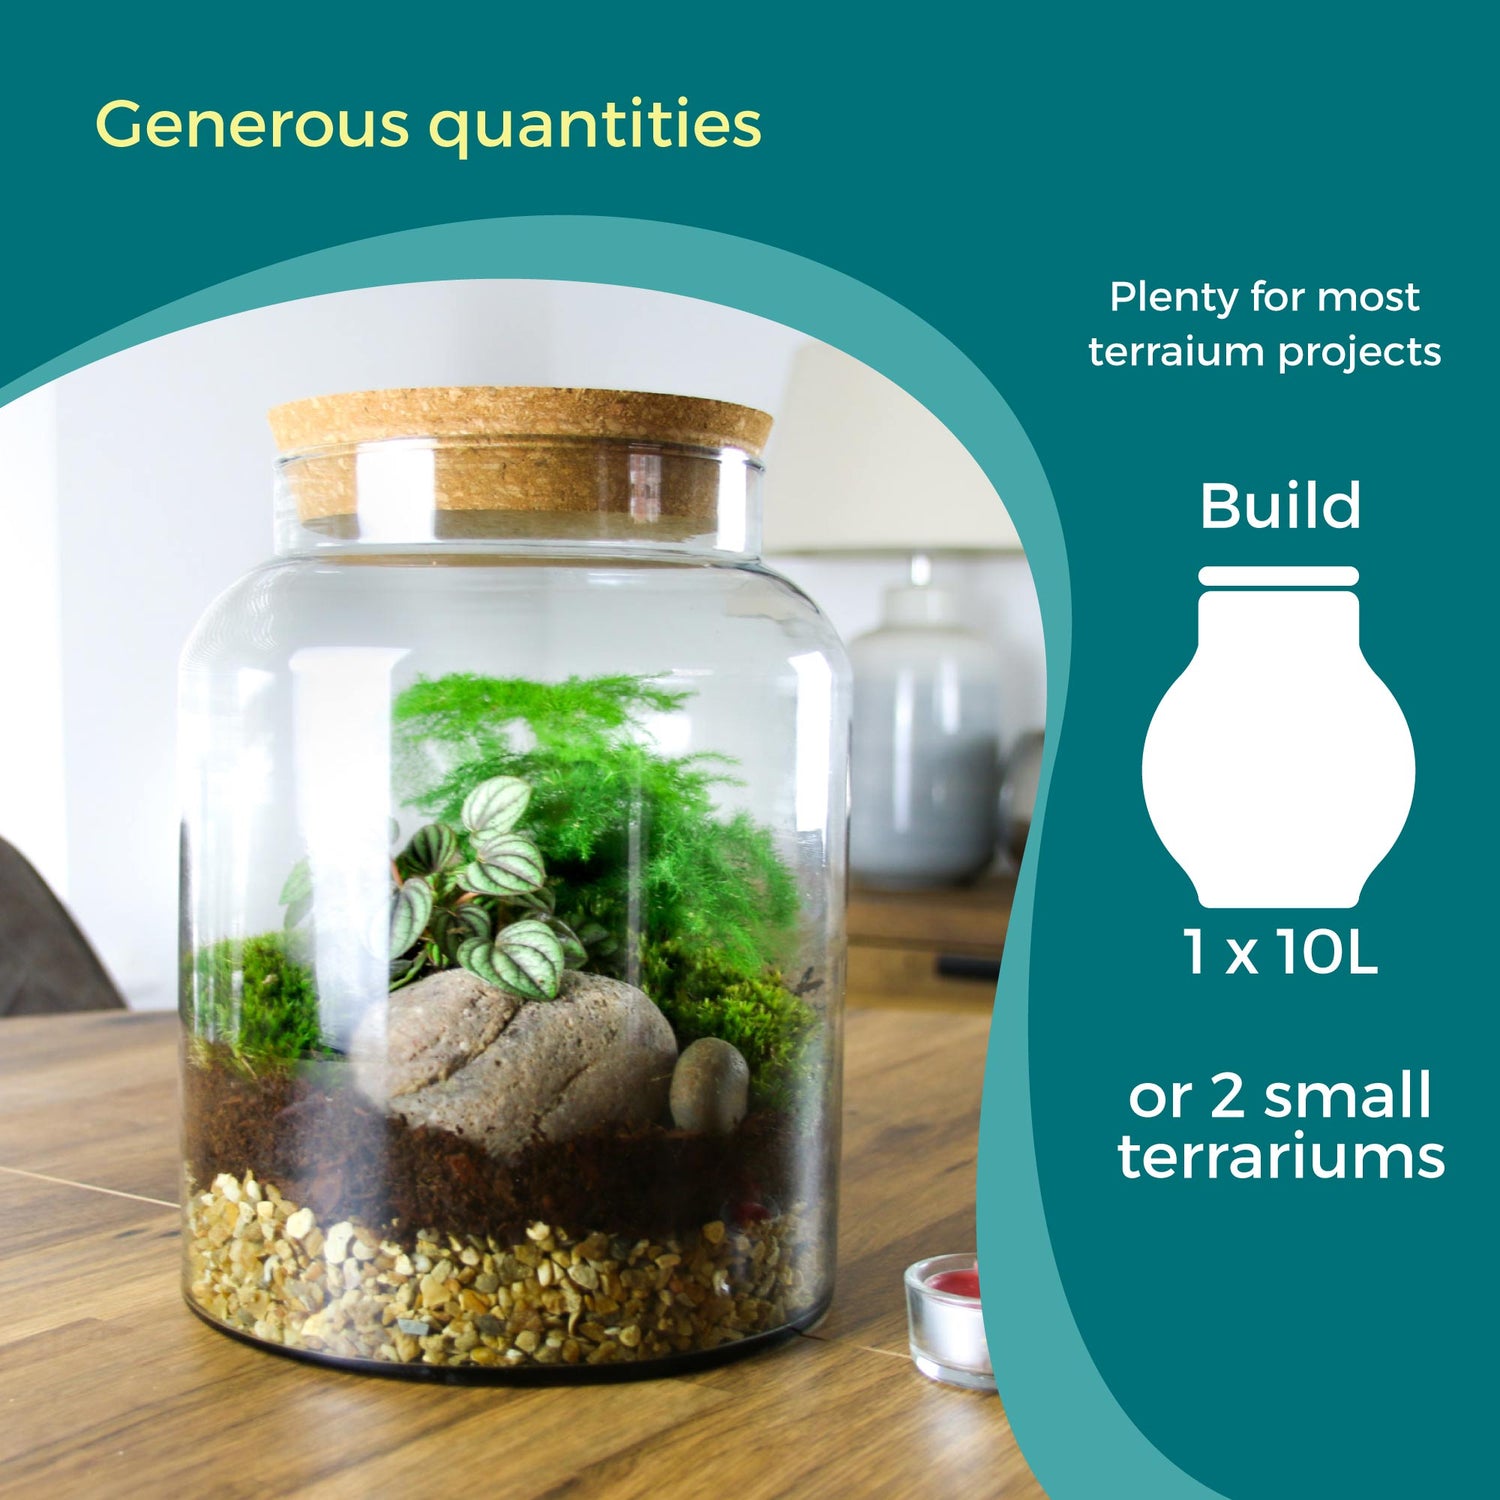 Terrarium kit contents to build a terrarium. UK delivery